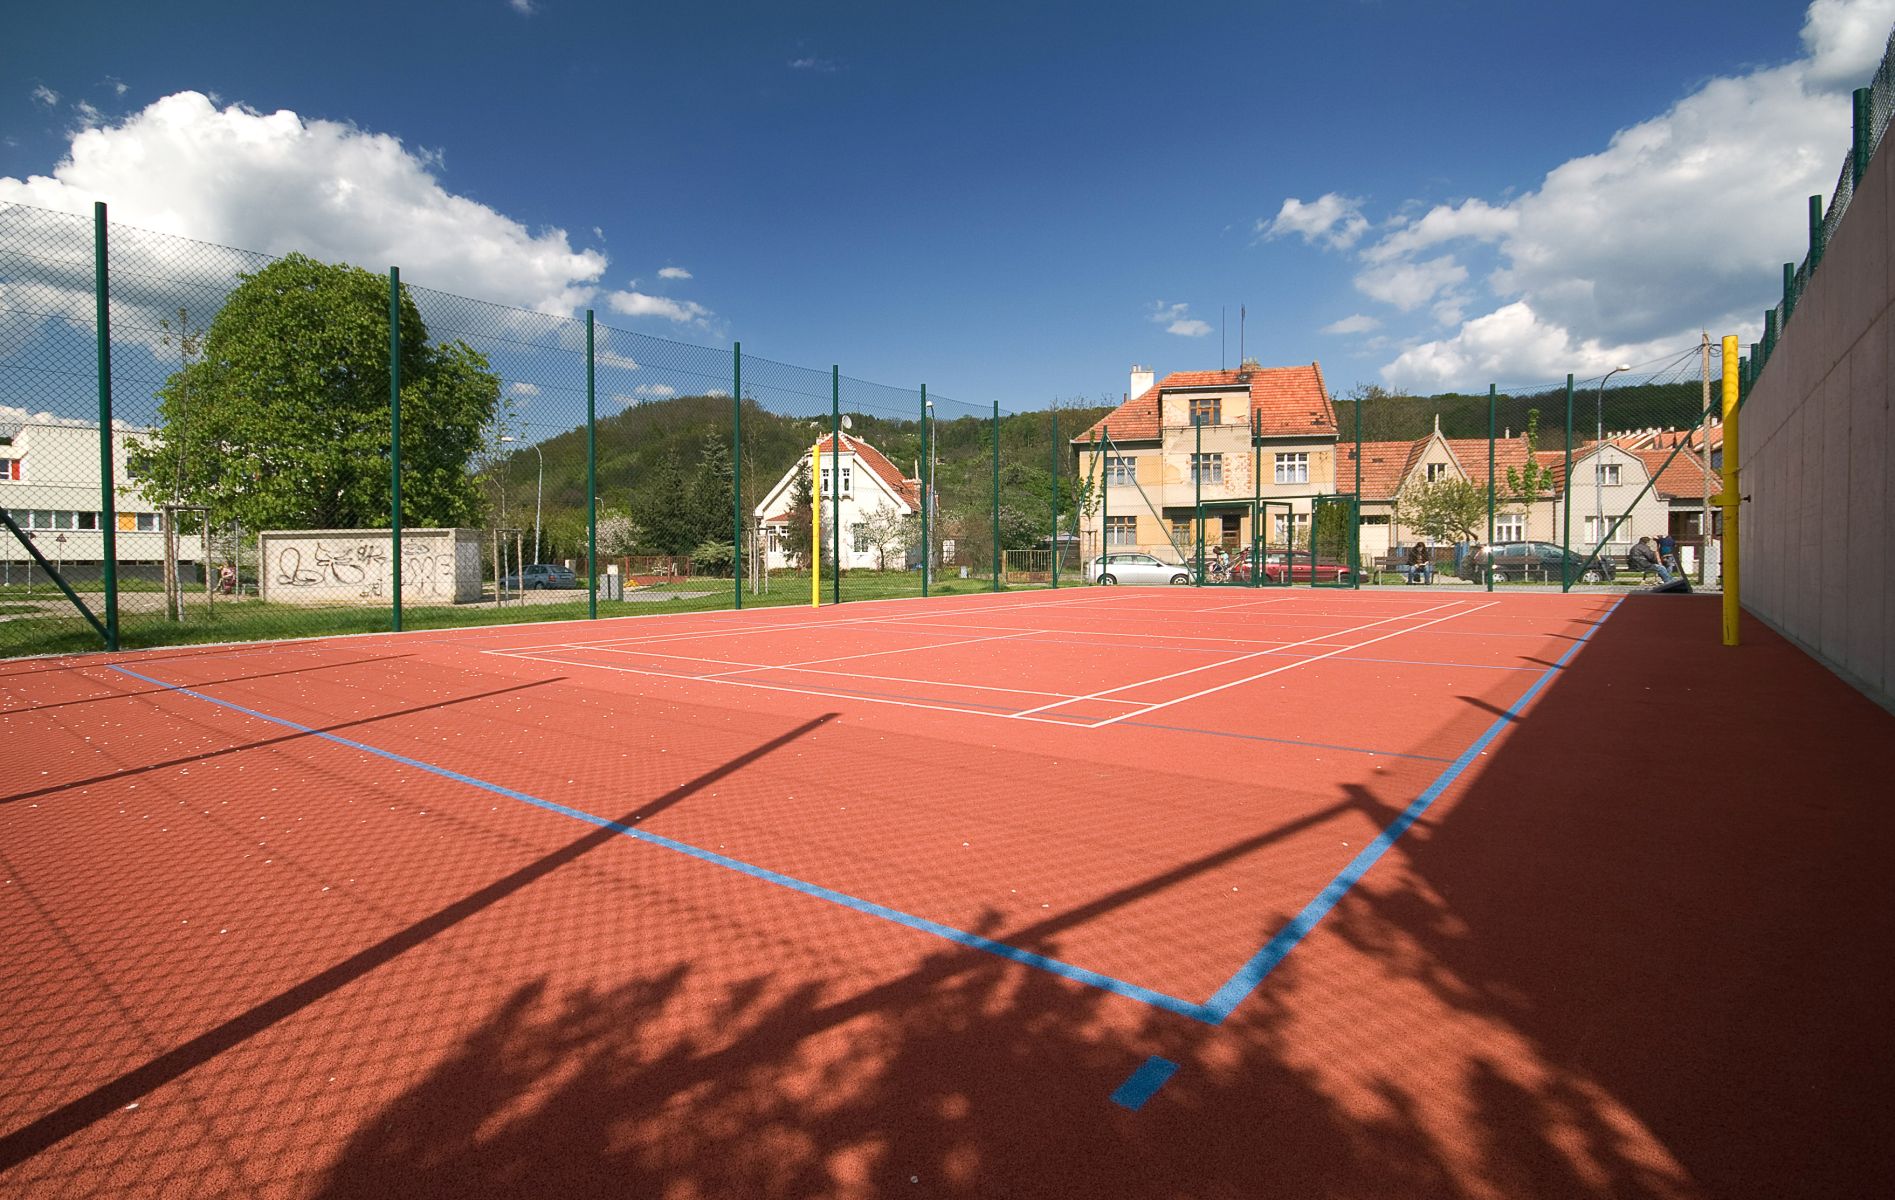 A sports ground, Brno-Komín